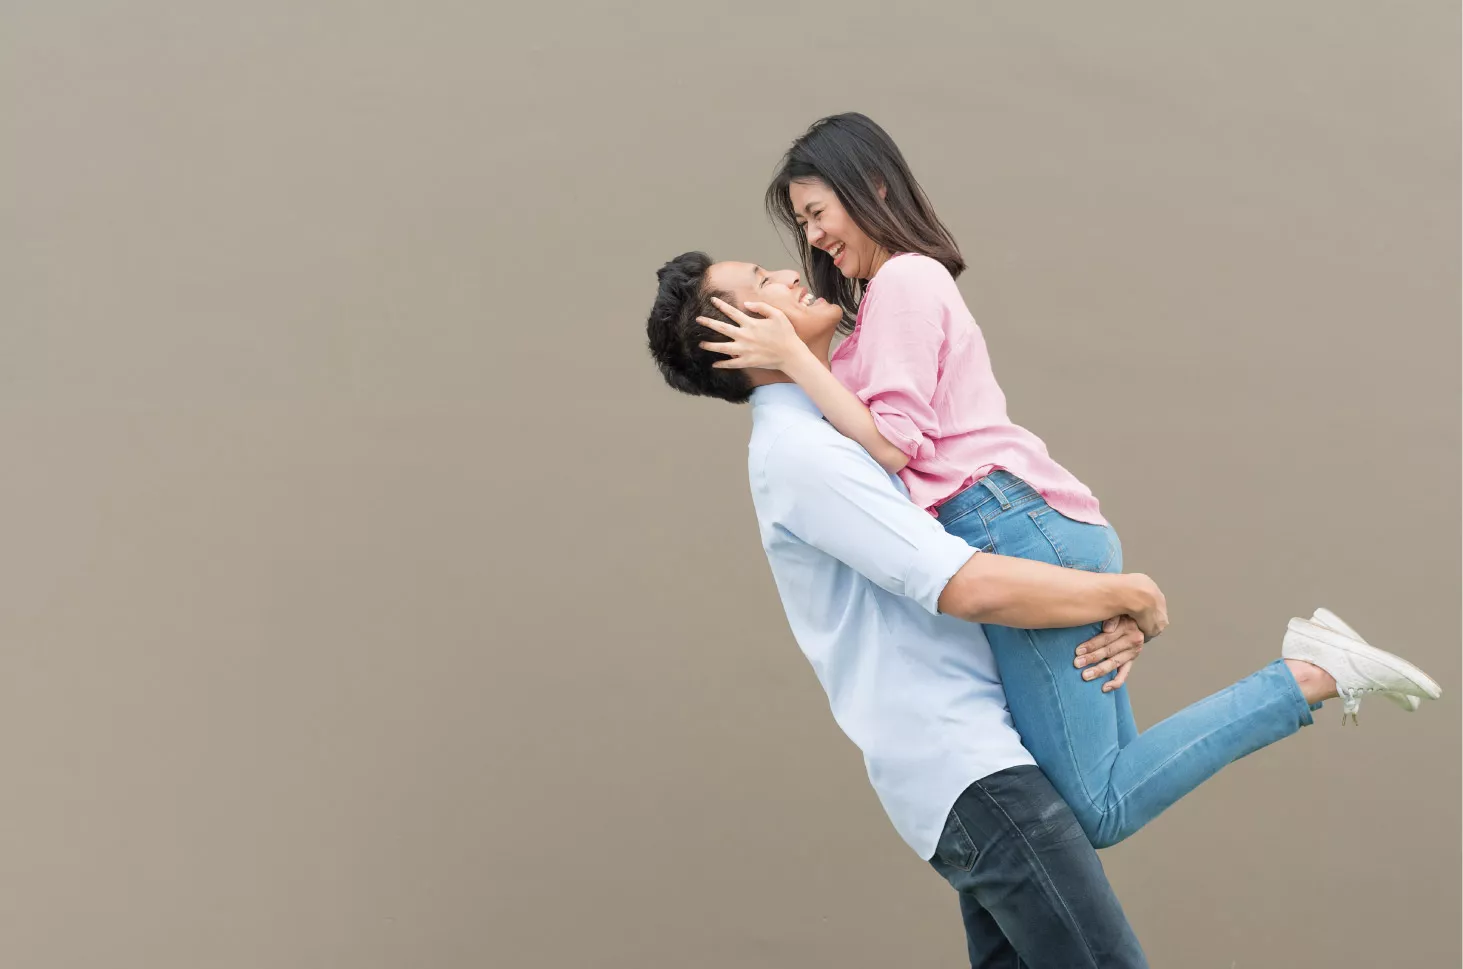 Jangan Ganti-Ganti Pasangan, 5 Alasan Hubungan Intim Sehat Itu Perlu